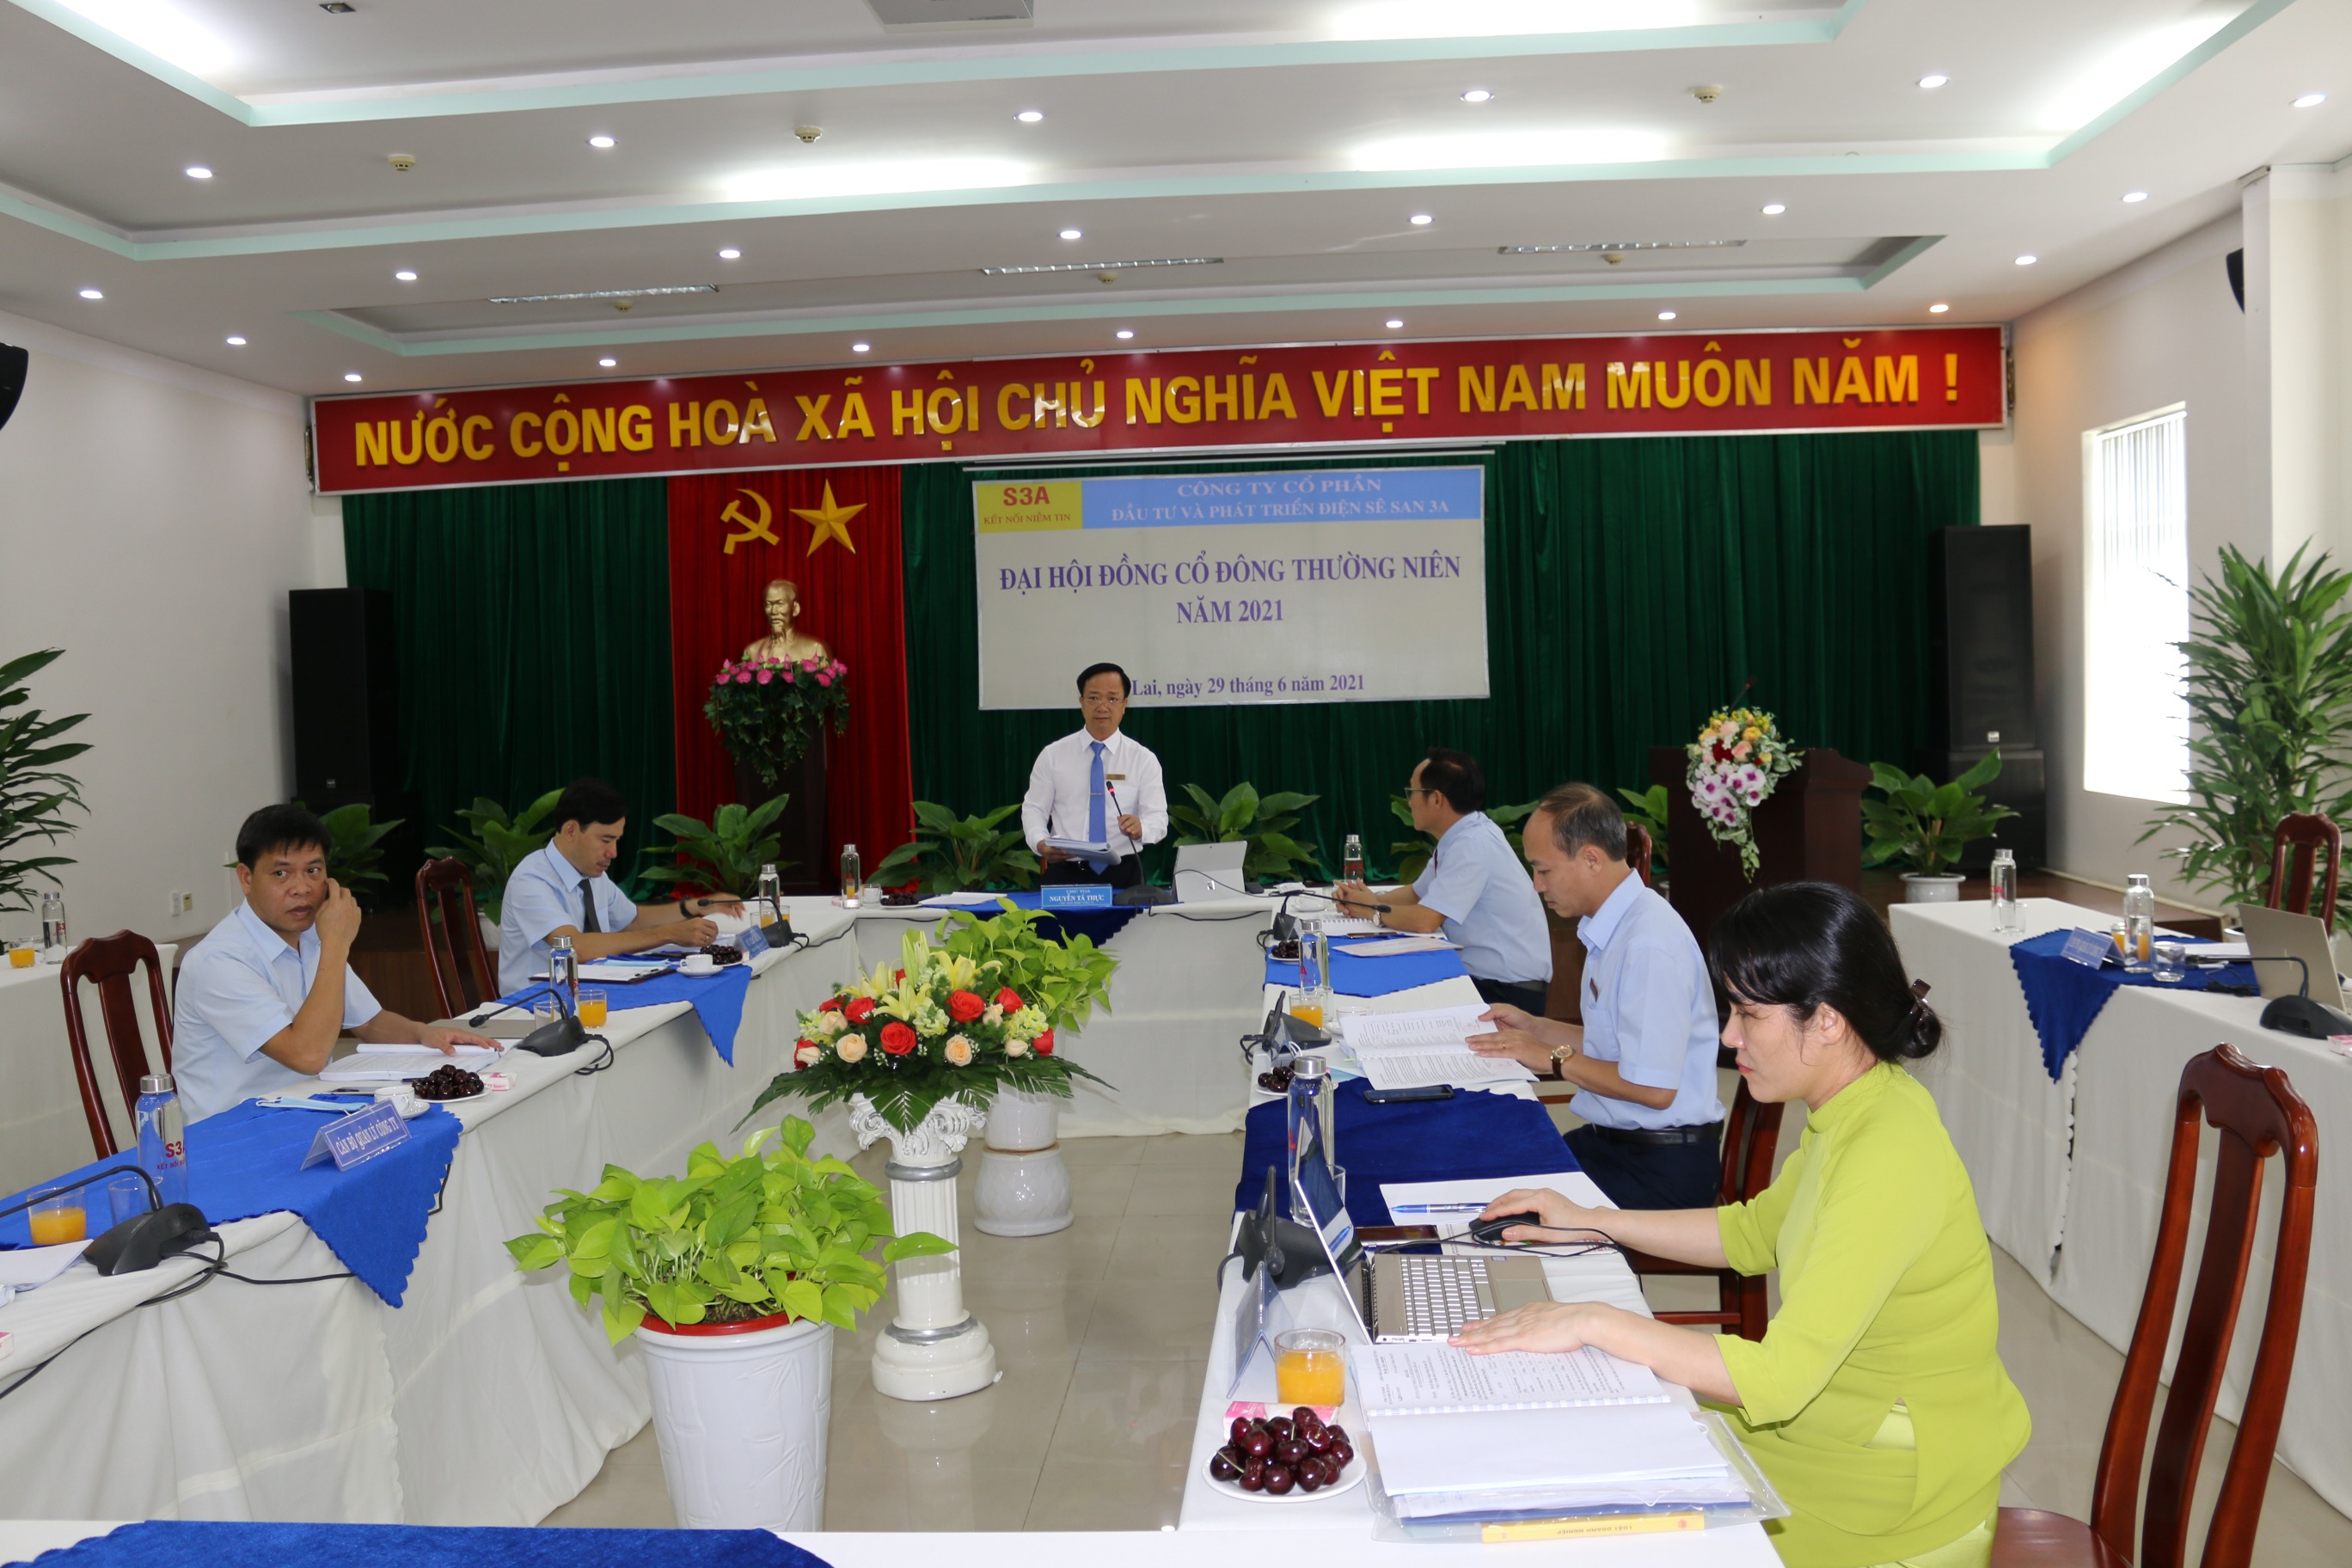 Ông Nguyễn Tá Thực - Chủ tịch HĐQT Công ty phát biểu khai mạc Đại hội